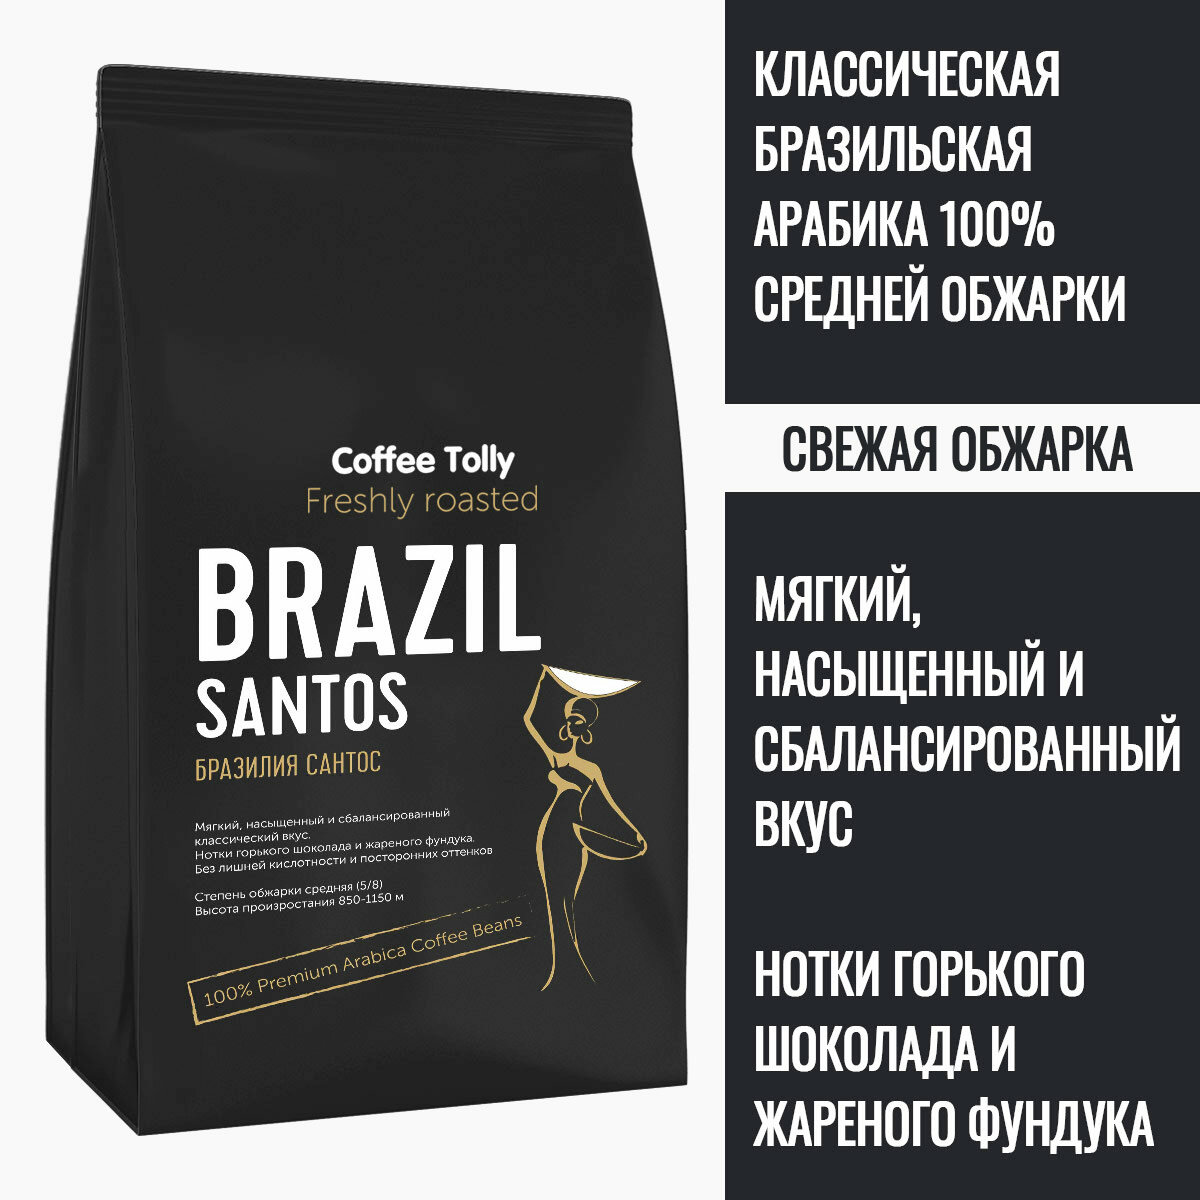 Brazil Santos свежеобжаренный кофе в зернах 100 гр. / Арабика 100%